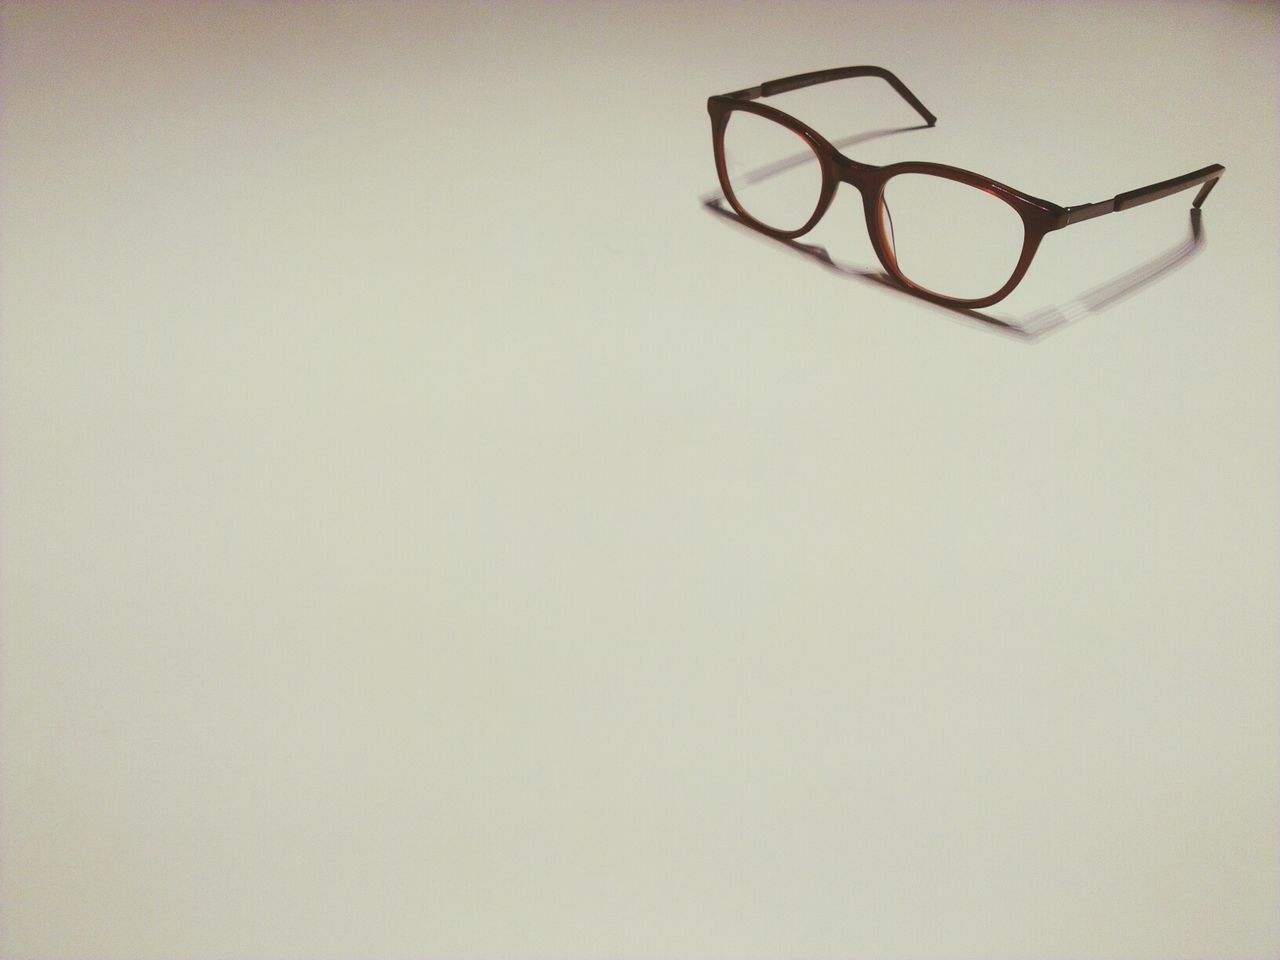 eyeglasses, copy space, single object, no people, glasses, indoors, studio shot, vision, white background, eyewear, close-up, eyesight, day